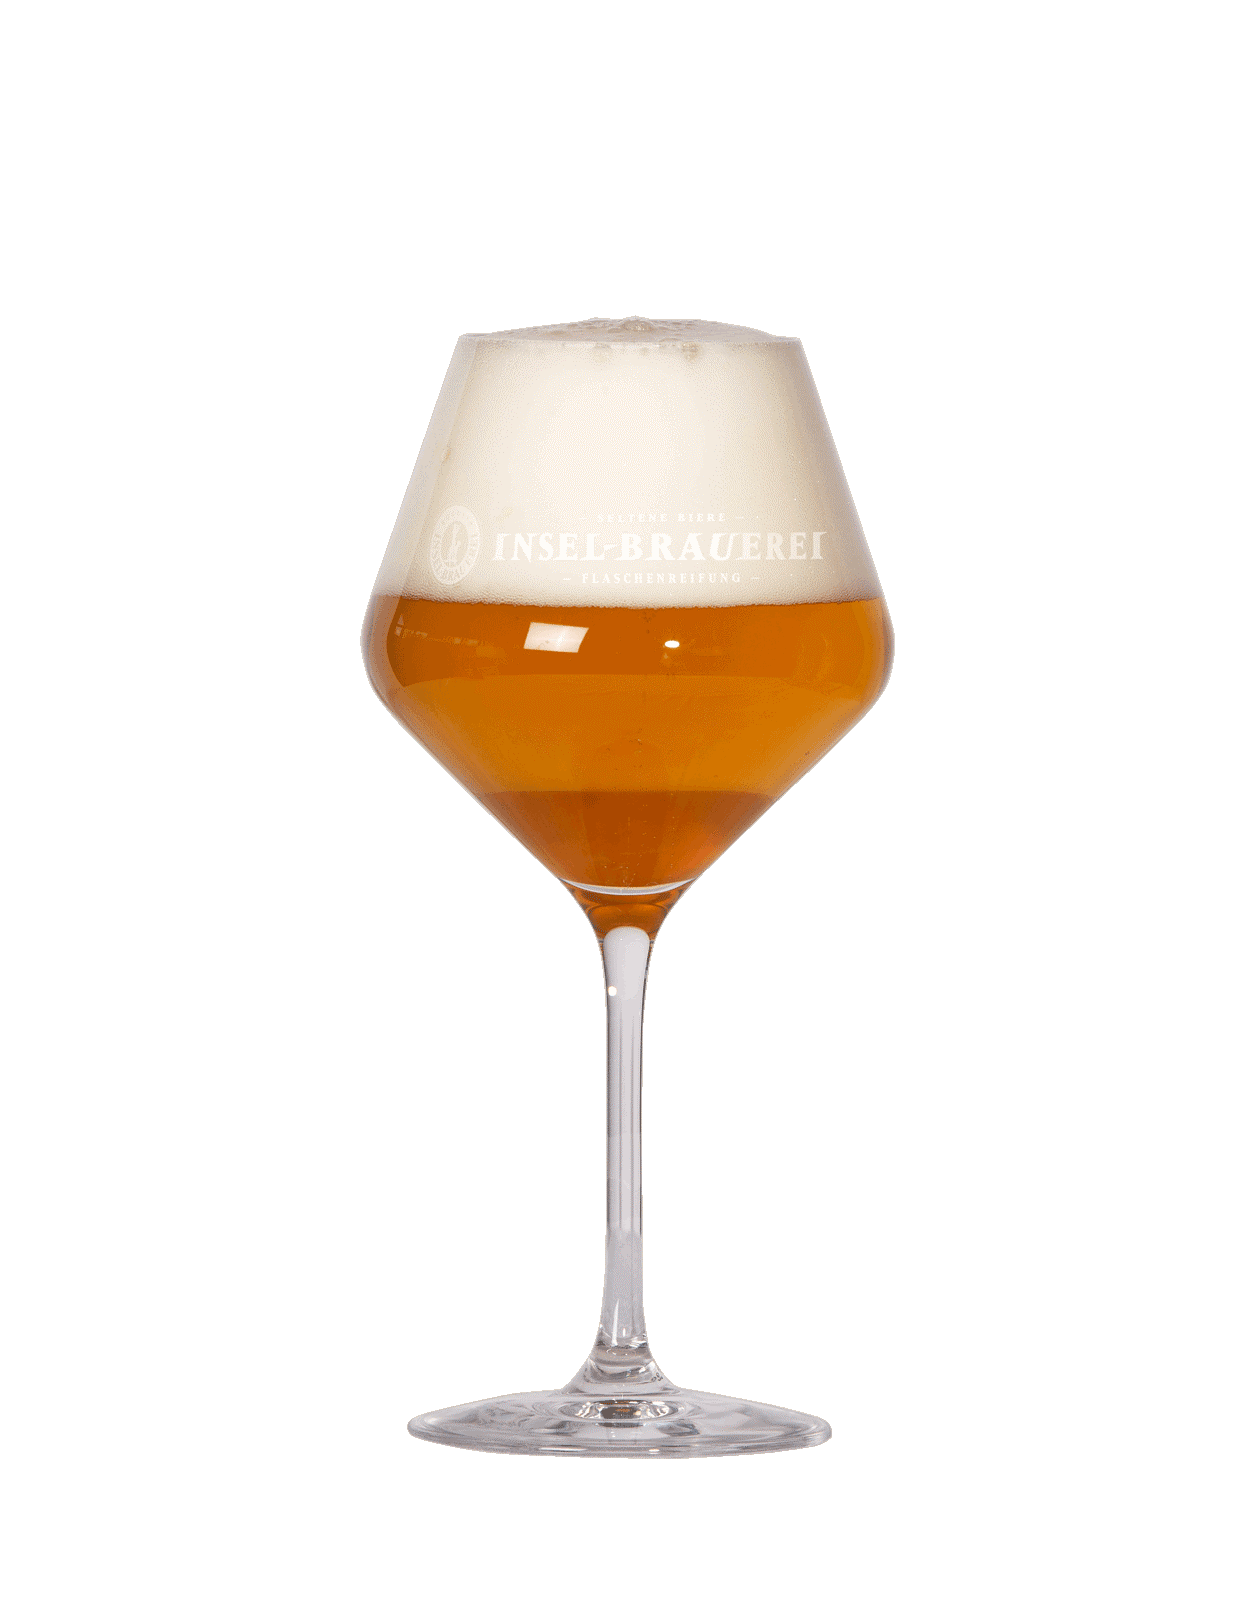 Gourmet Glass - Logo Insel-Brauerei